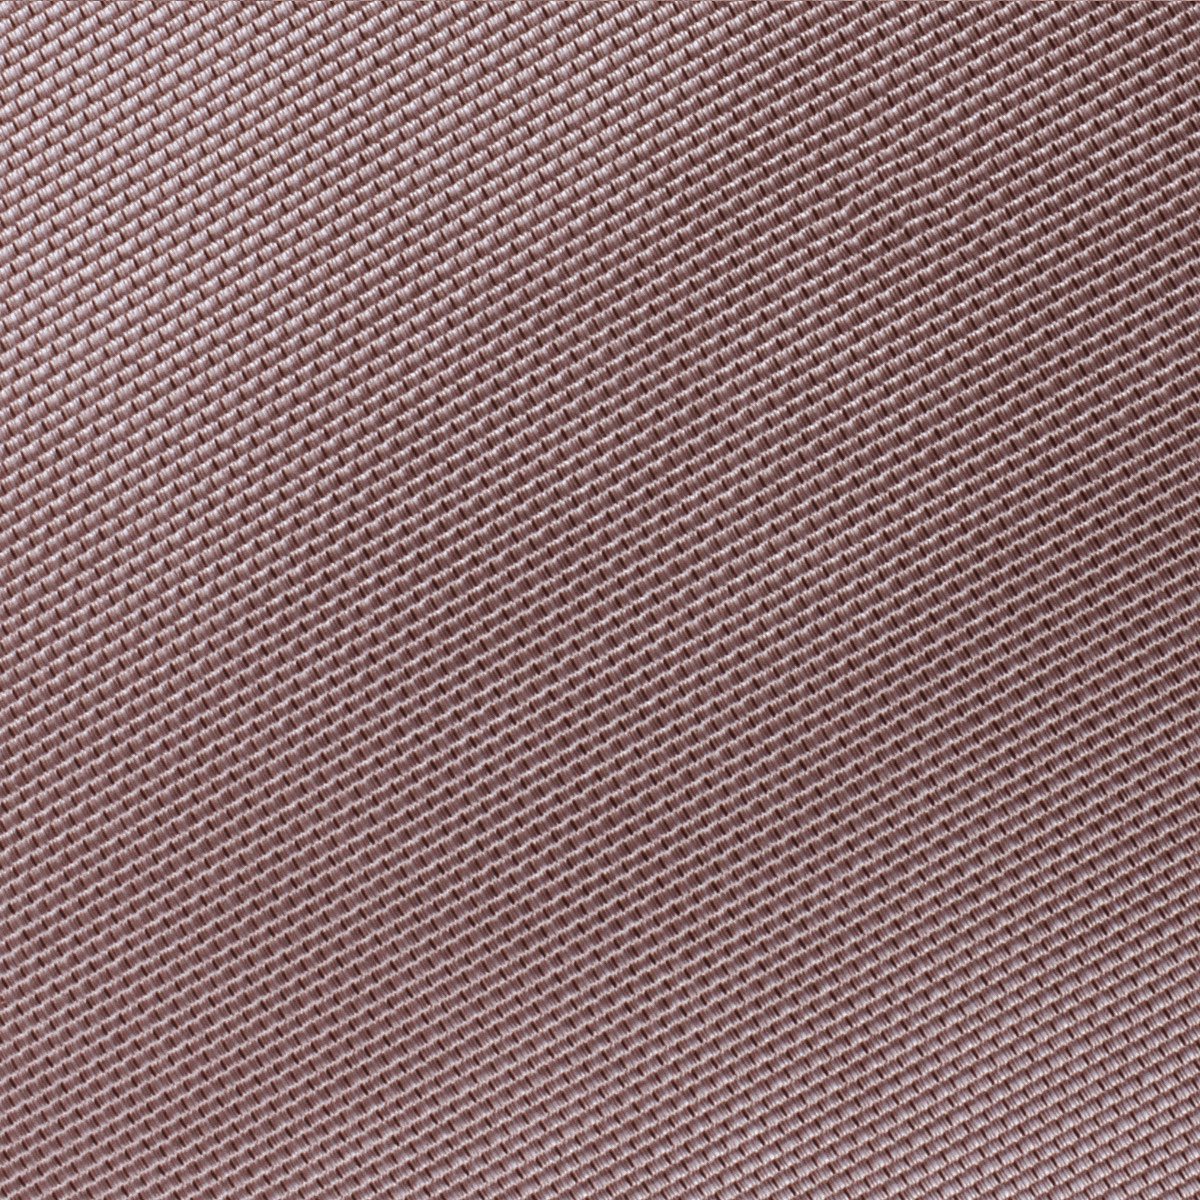 Dusty Mauve Quartz Weave Fabric Swatch